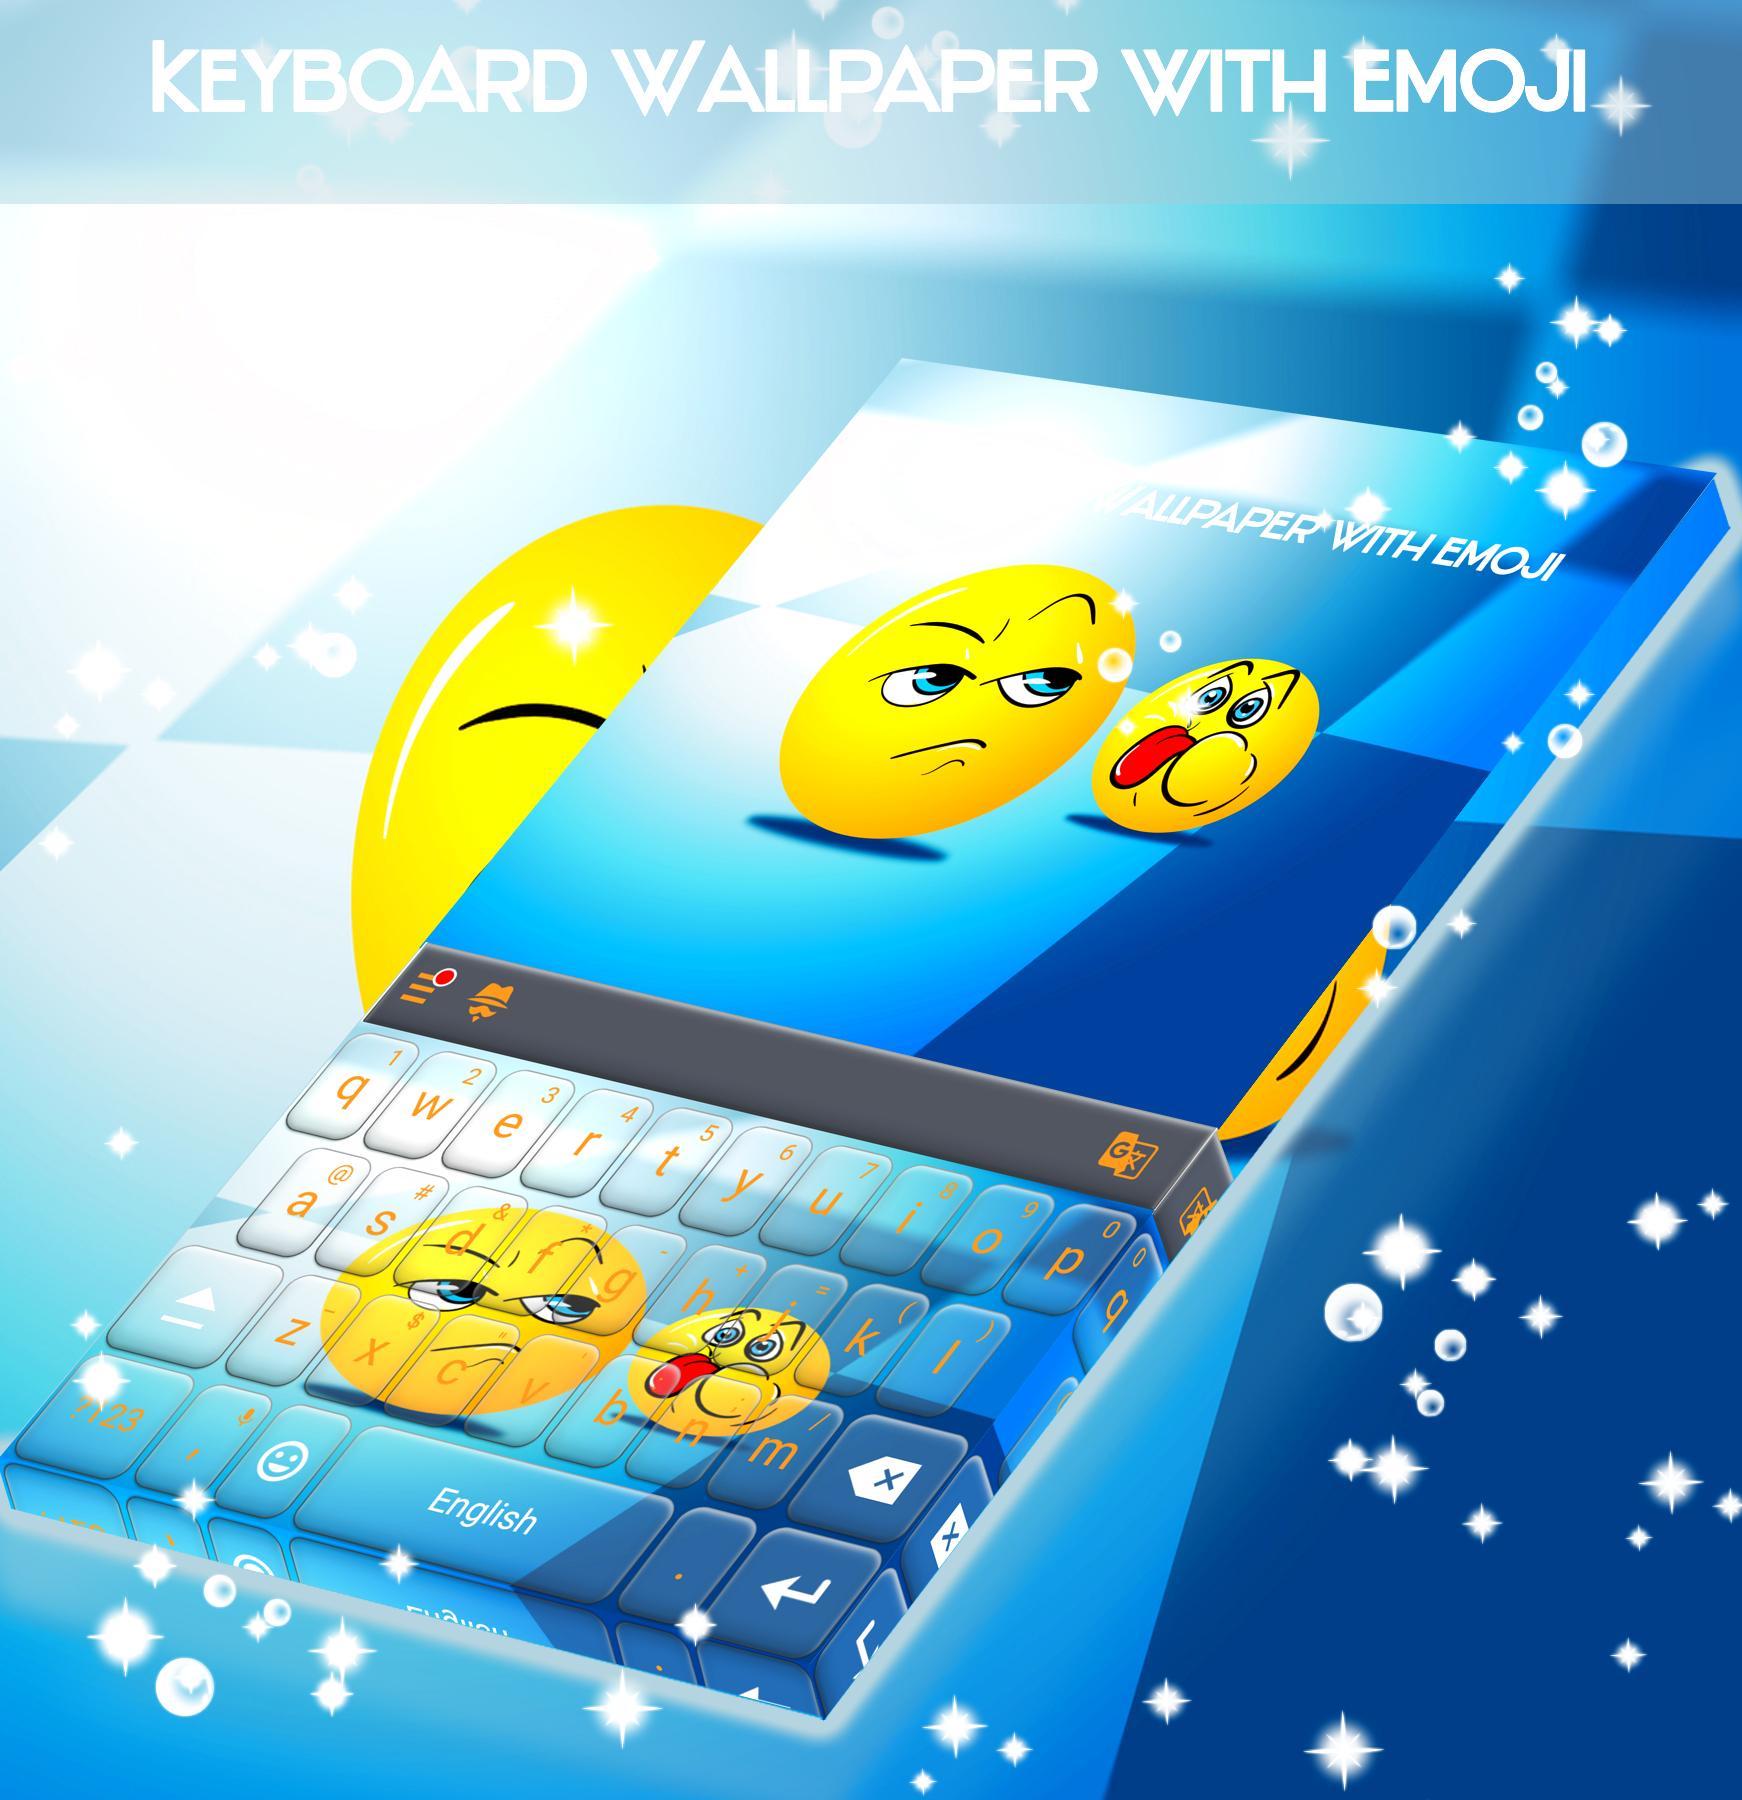 Android 用の 絵文字のキーボード壁紙 Apk をダウンロード